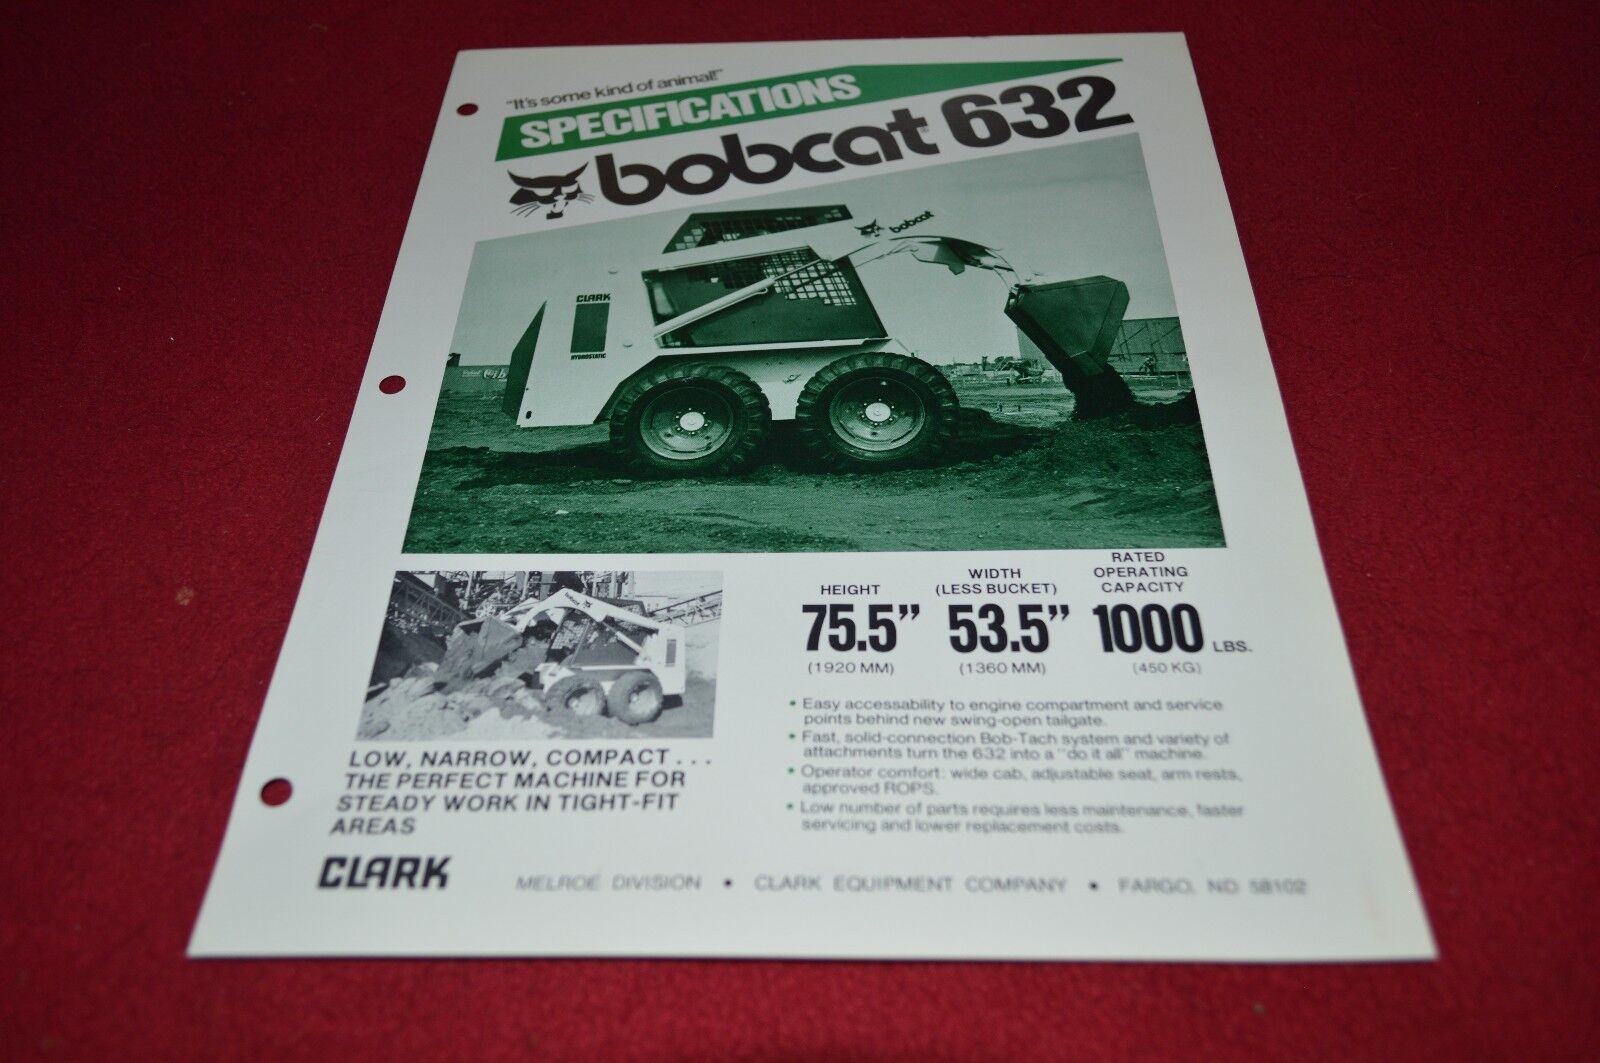 Bobcat 632 Skid Steer Loader Dealers Brochure DCPA2